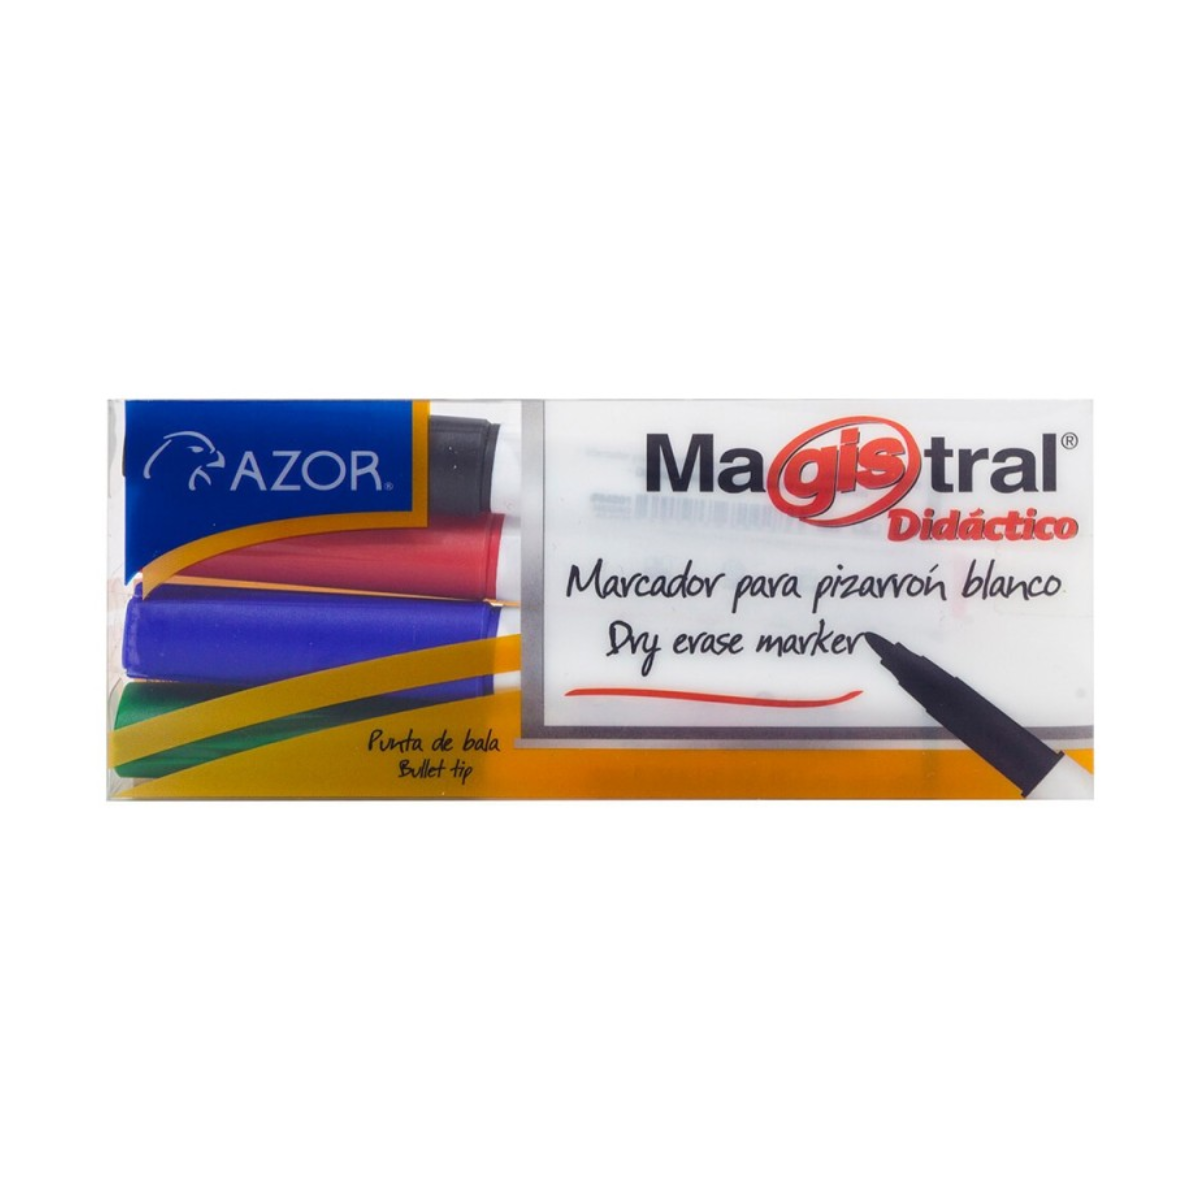 Marcadores Azor para Pizarrón Blanco 2mm Magistral Didactico 4 Piezas